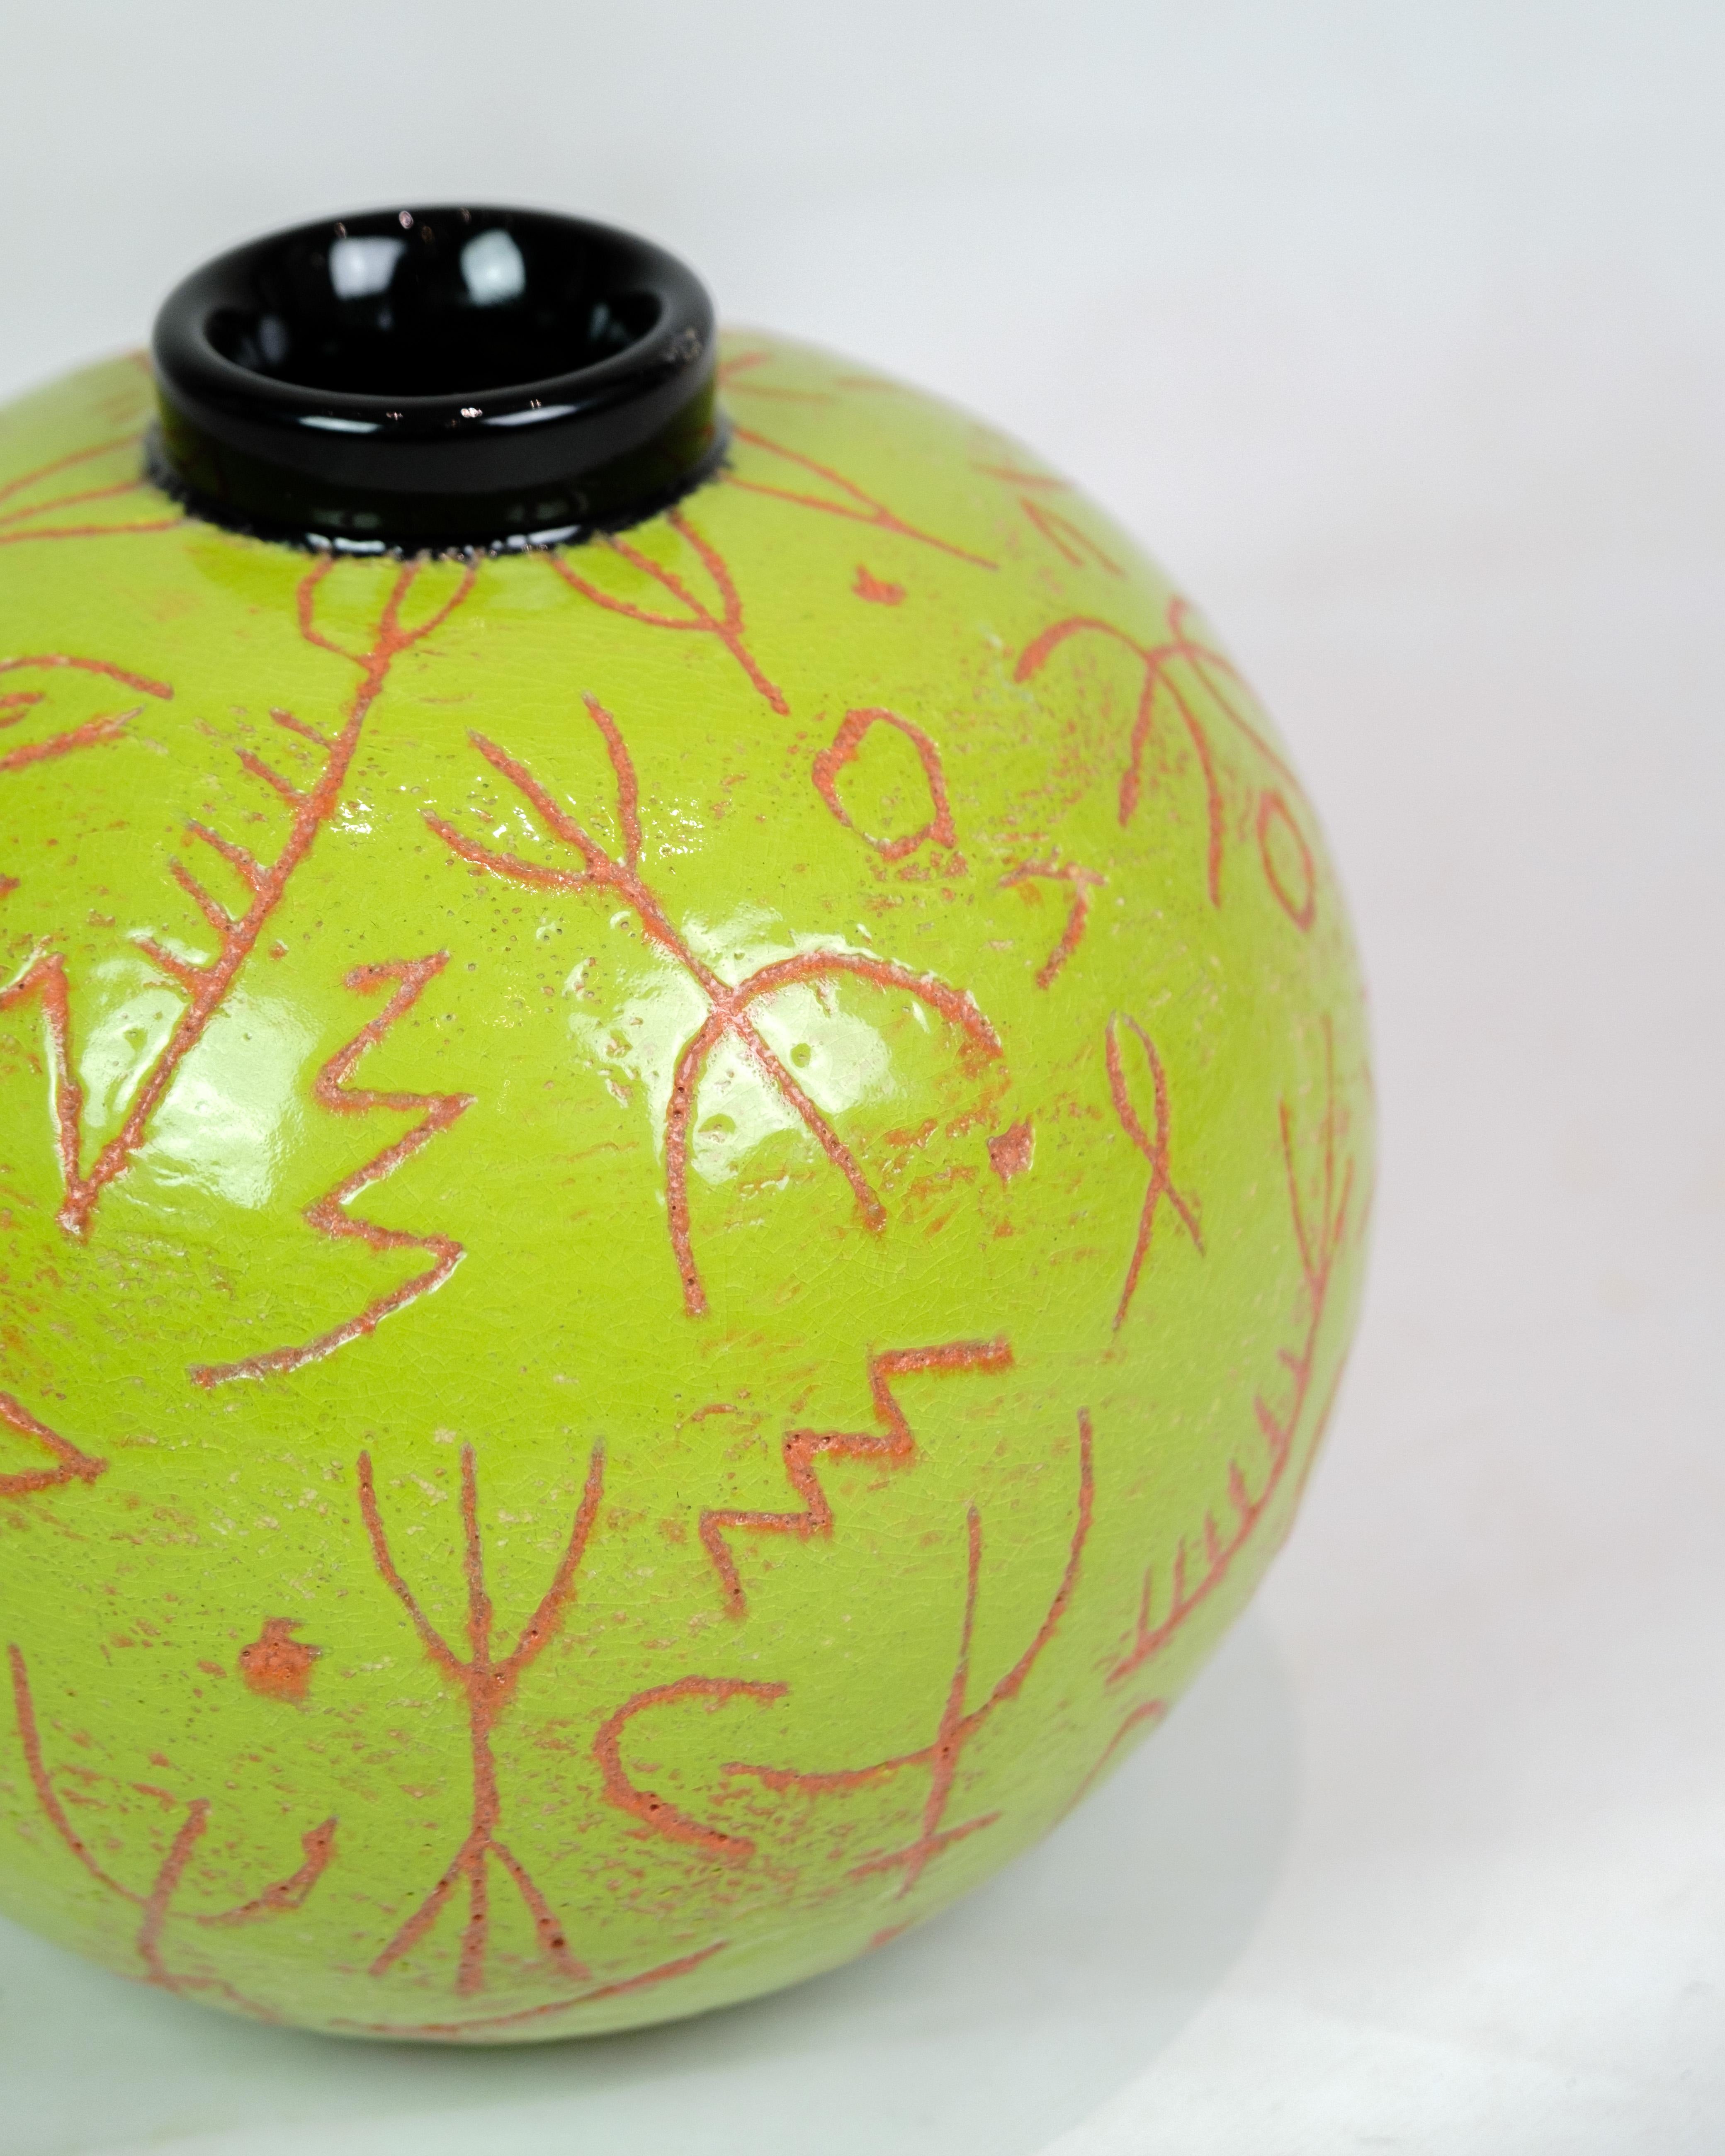 Die runde Vase von Lene Regius mit schwarzem Deckel, grüner Glasur und orangefarbener Mustergravur aus der Zeit um die 1990er Jahre repräsentiert eine einzigartige Periode im Keramikdesign. Die Vase kombiniert verschiedene Farben und Muster zu einem